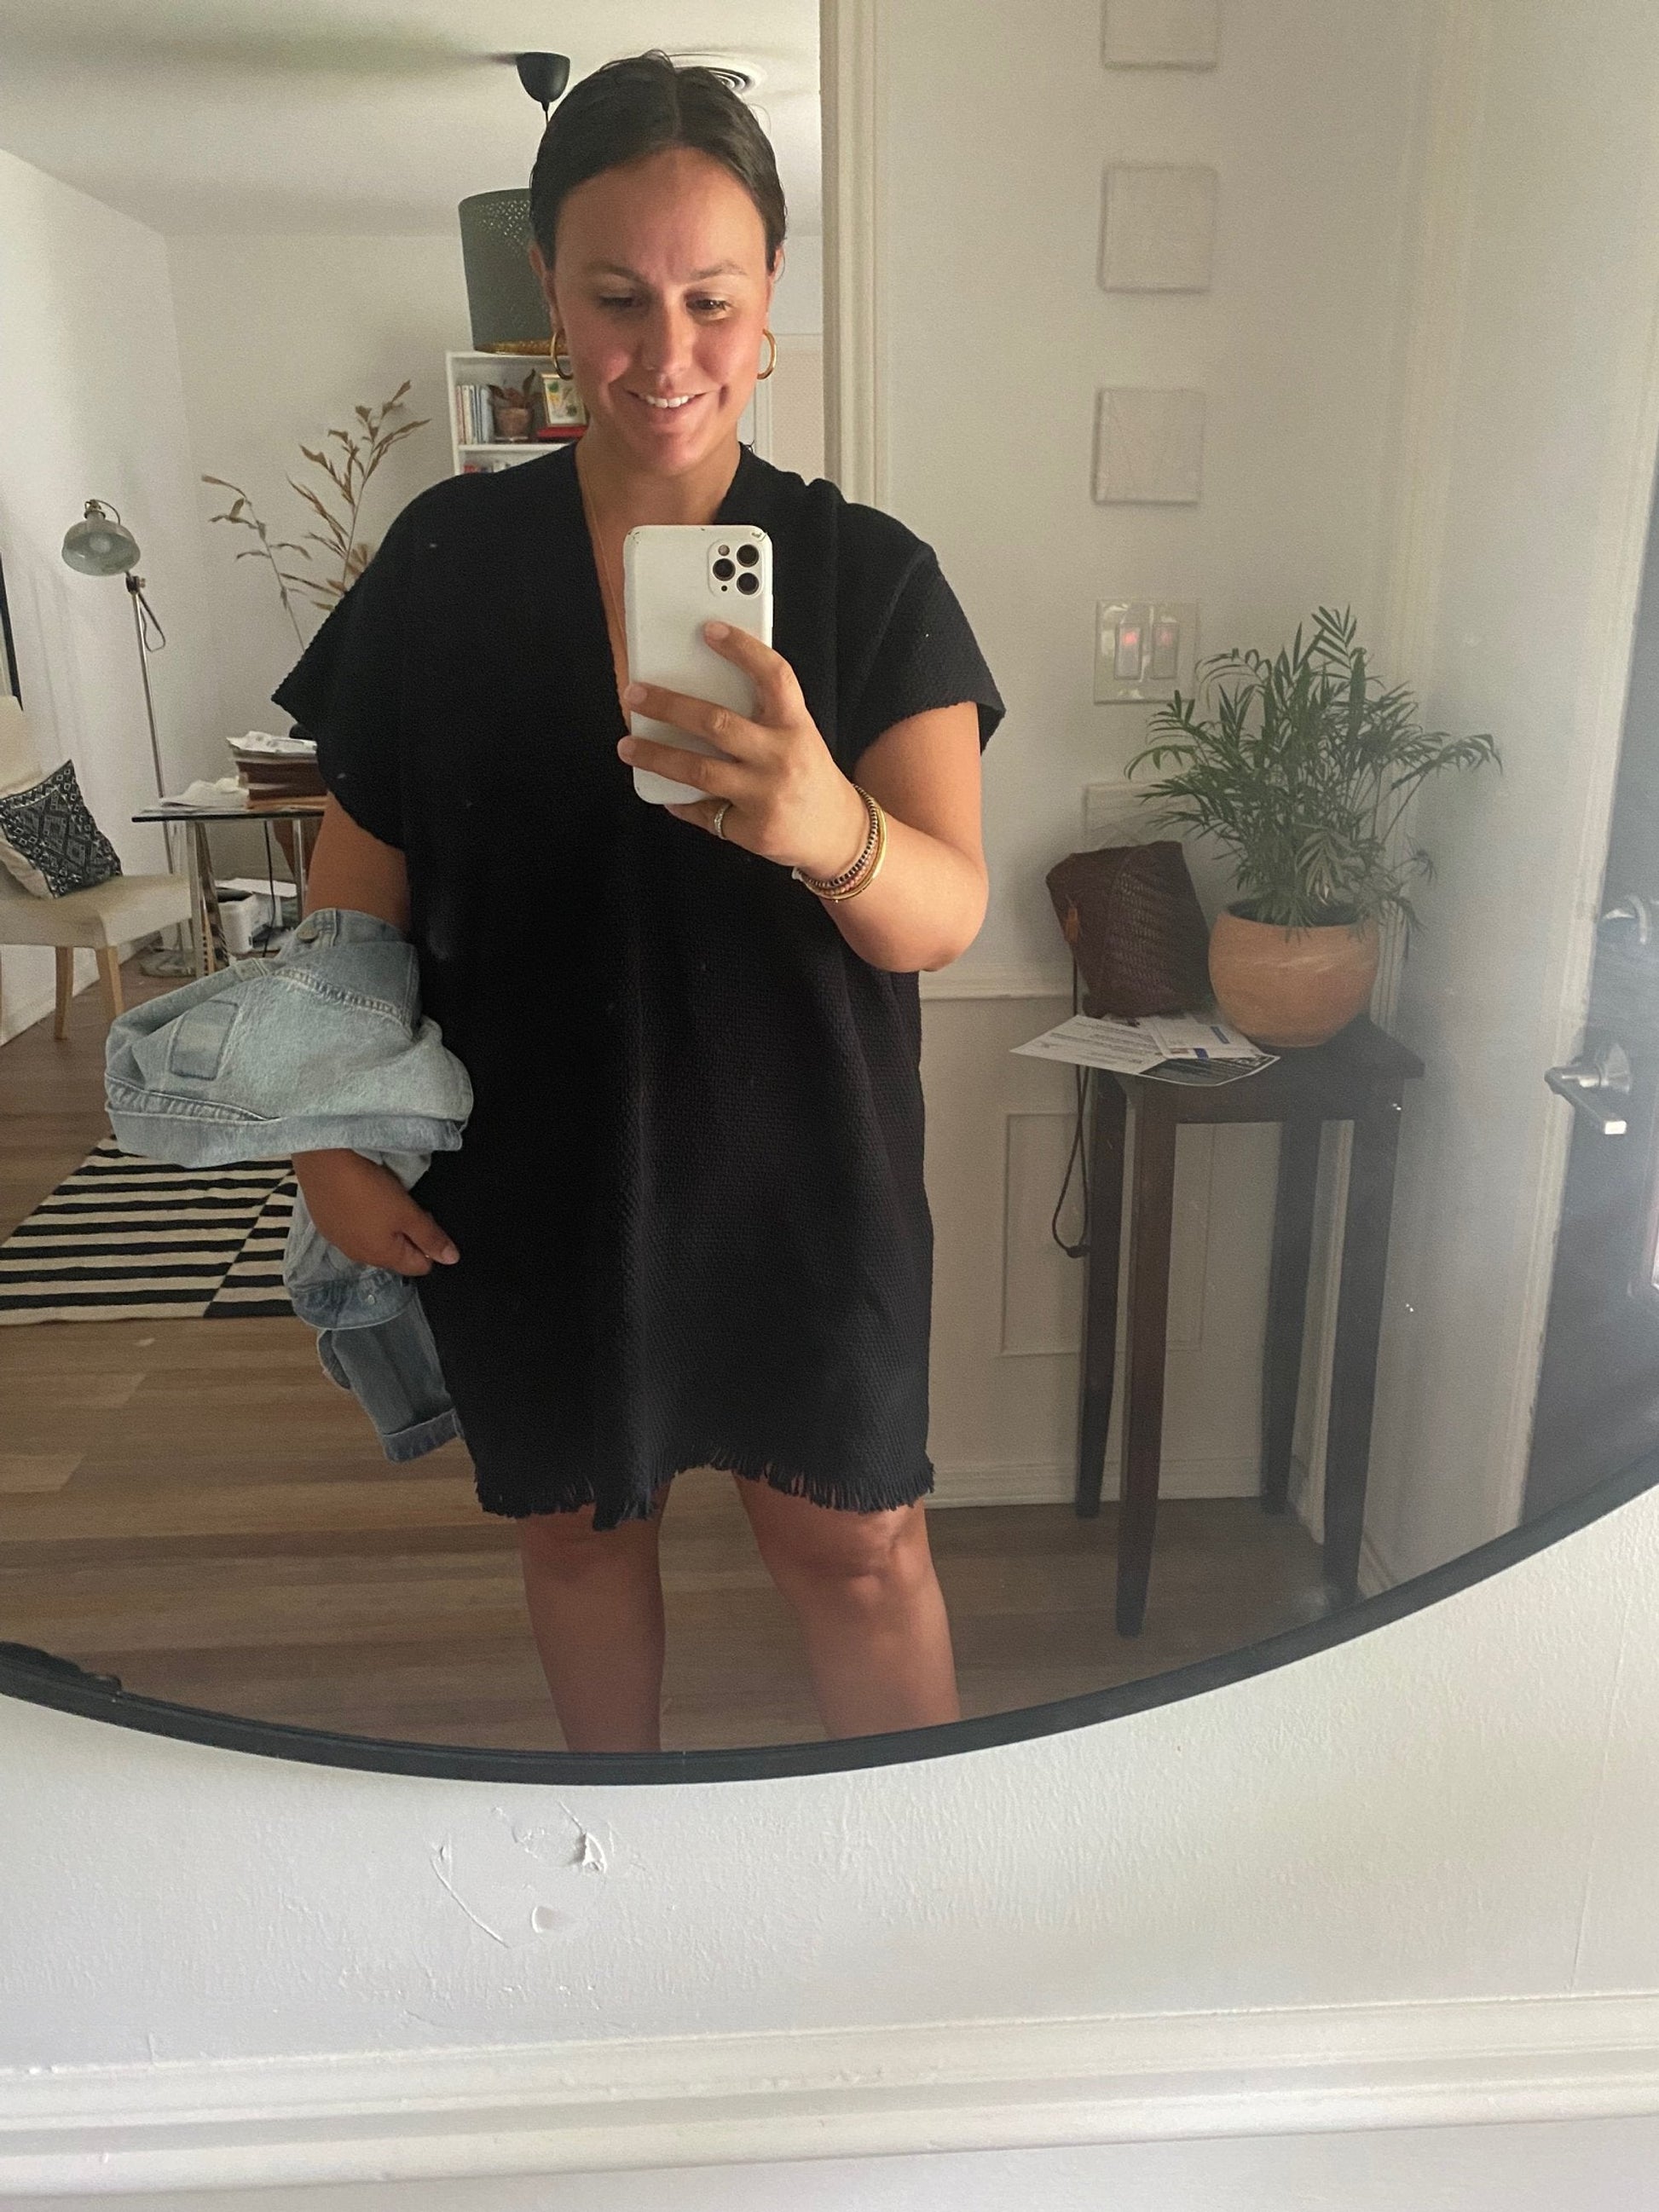 Mirror selfie of woman wearing black caftan